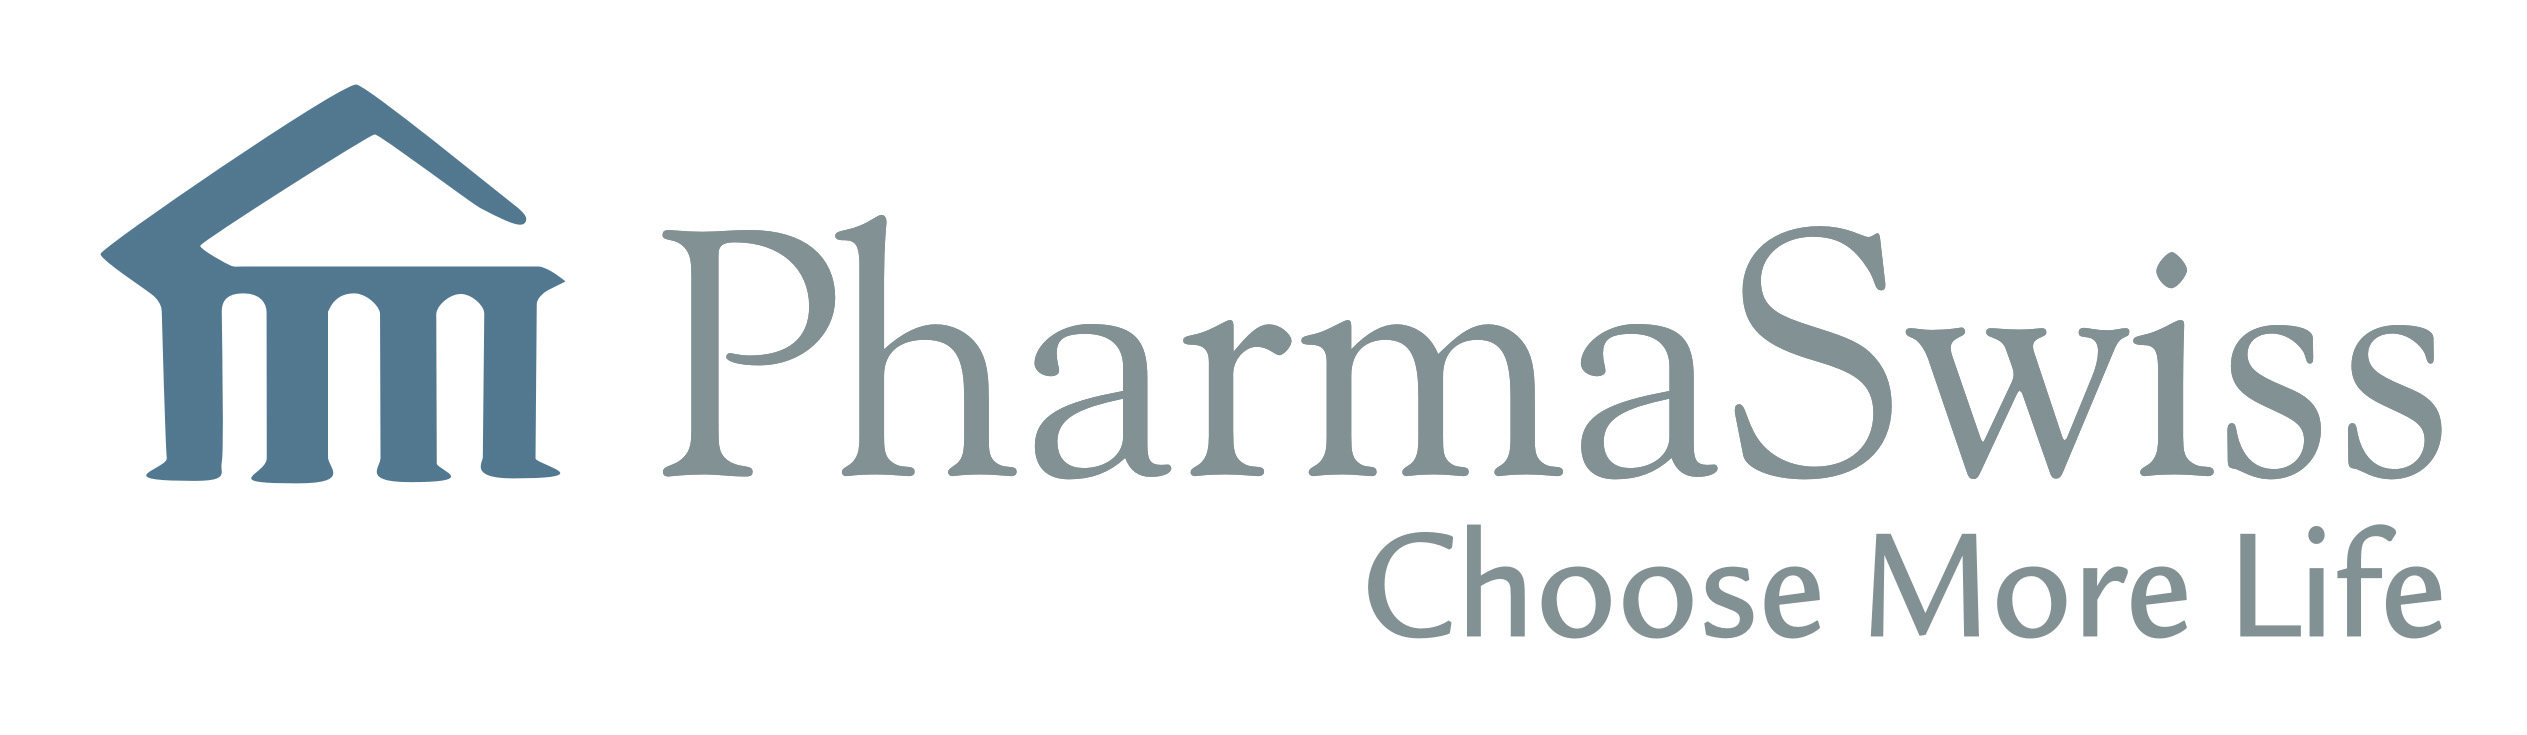 PharmaSwiss_Logo.jpg